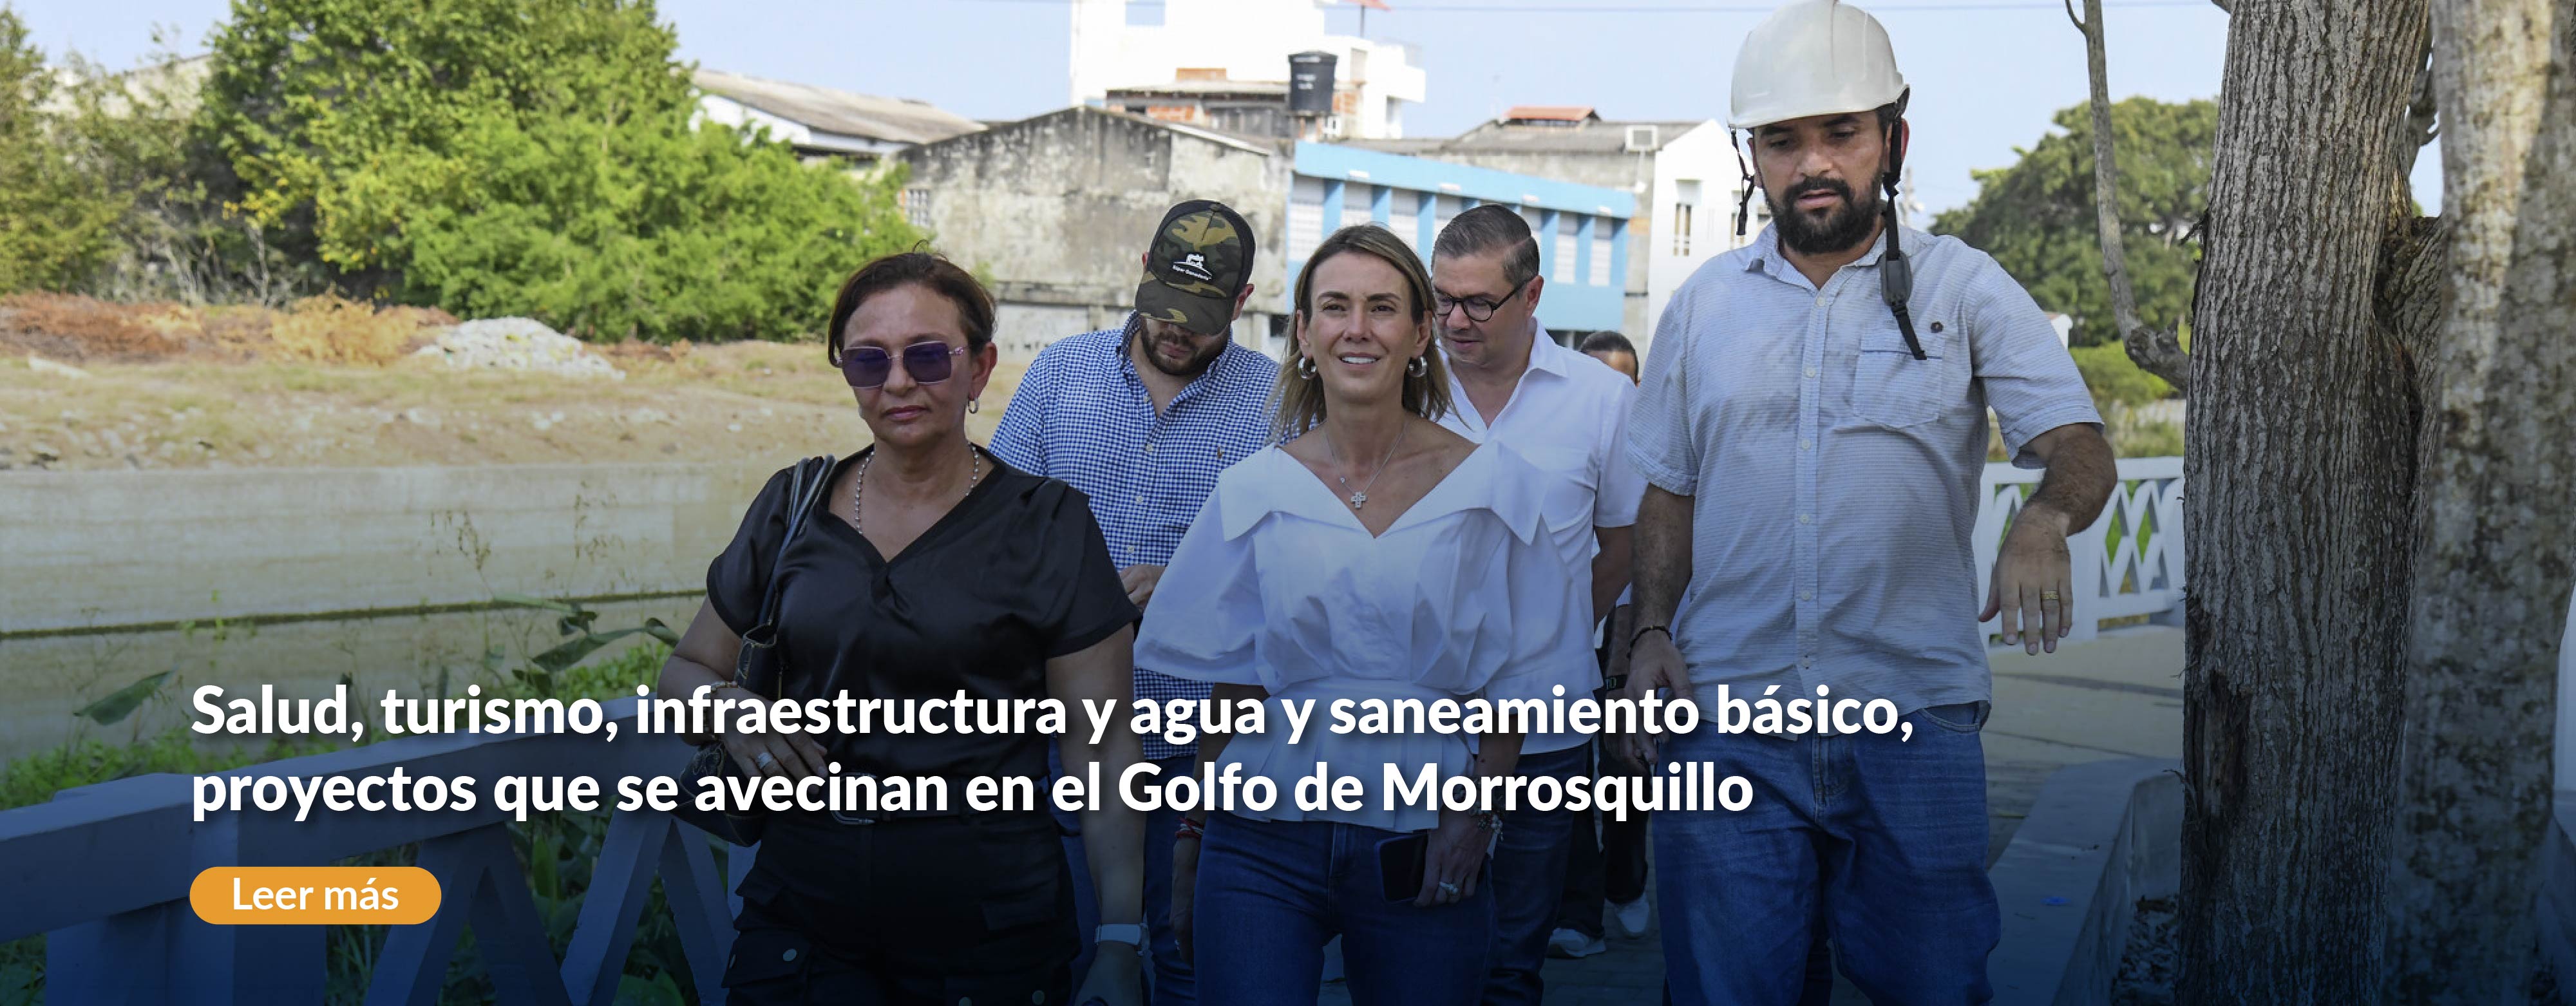 Salud, turismo, infraestructura y agua y saneamiento básico, proyectos que se avecinan en el Golfo de Morrosquillo